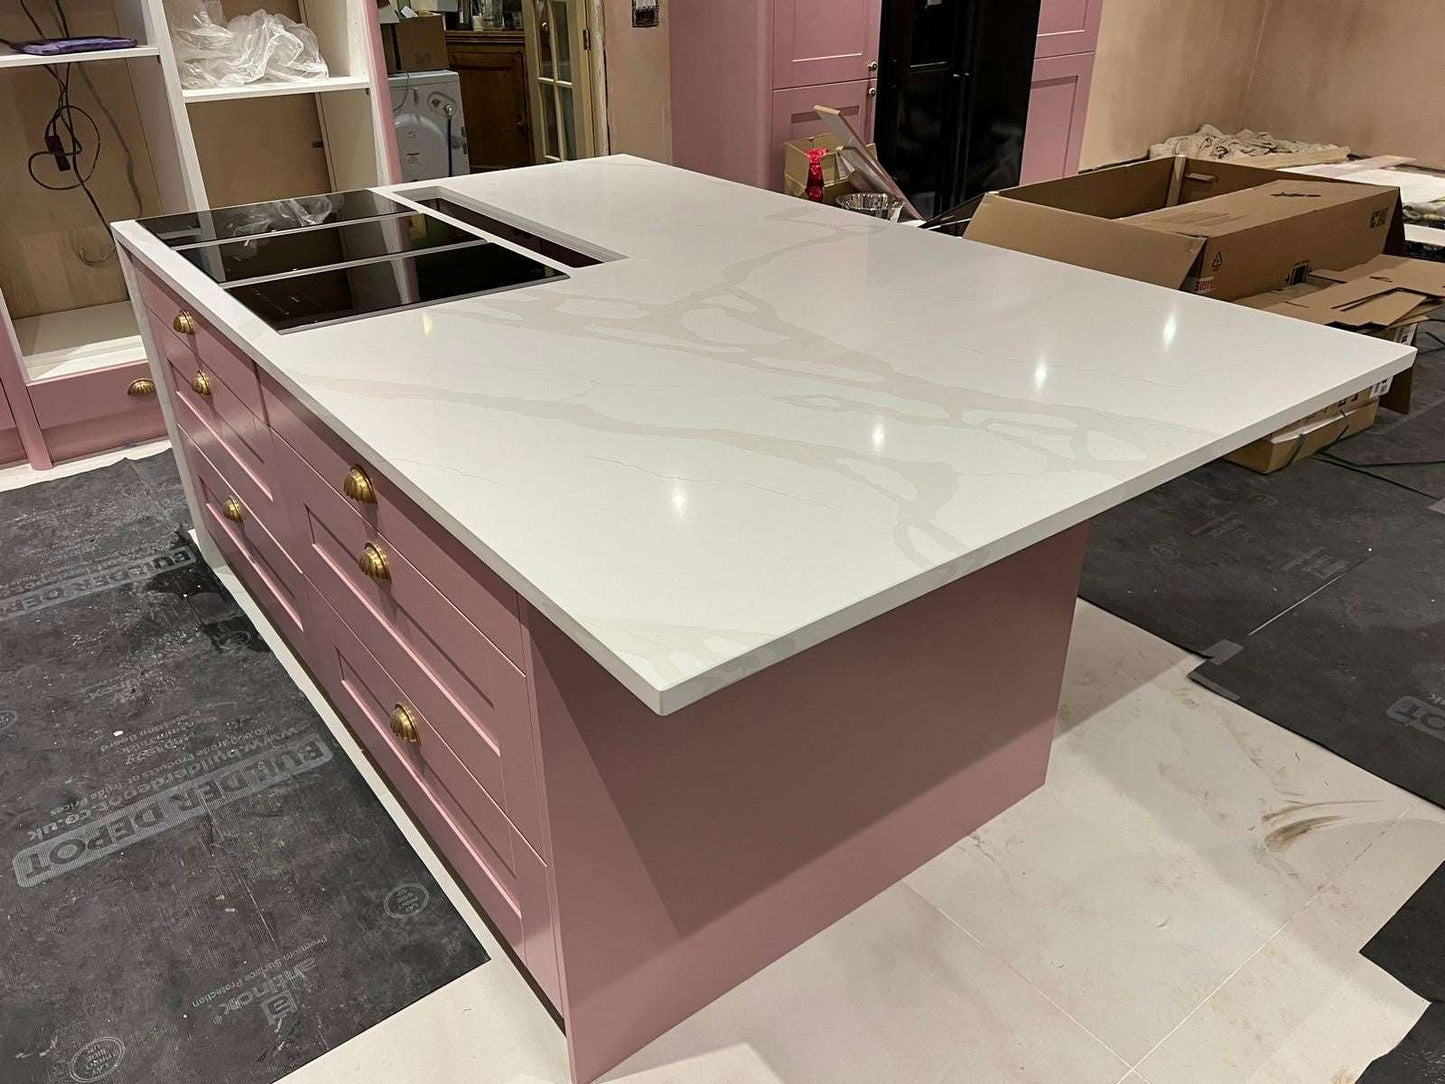 Calacatta Light quartz kitchen worktops with pink cabinetry